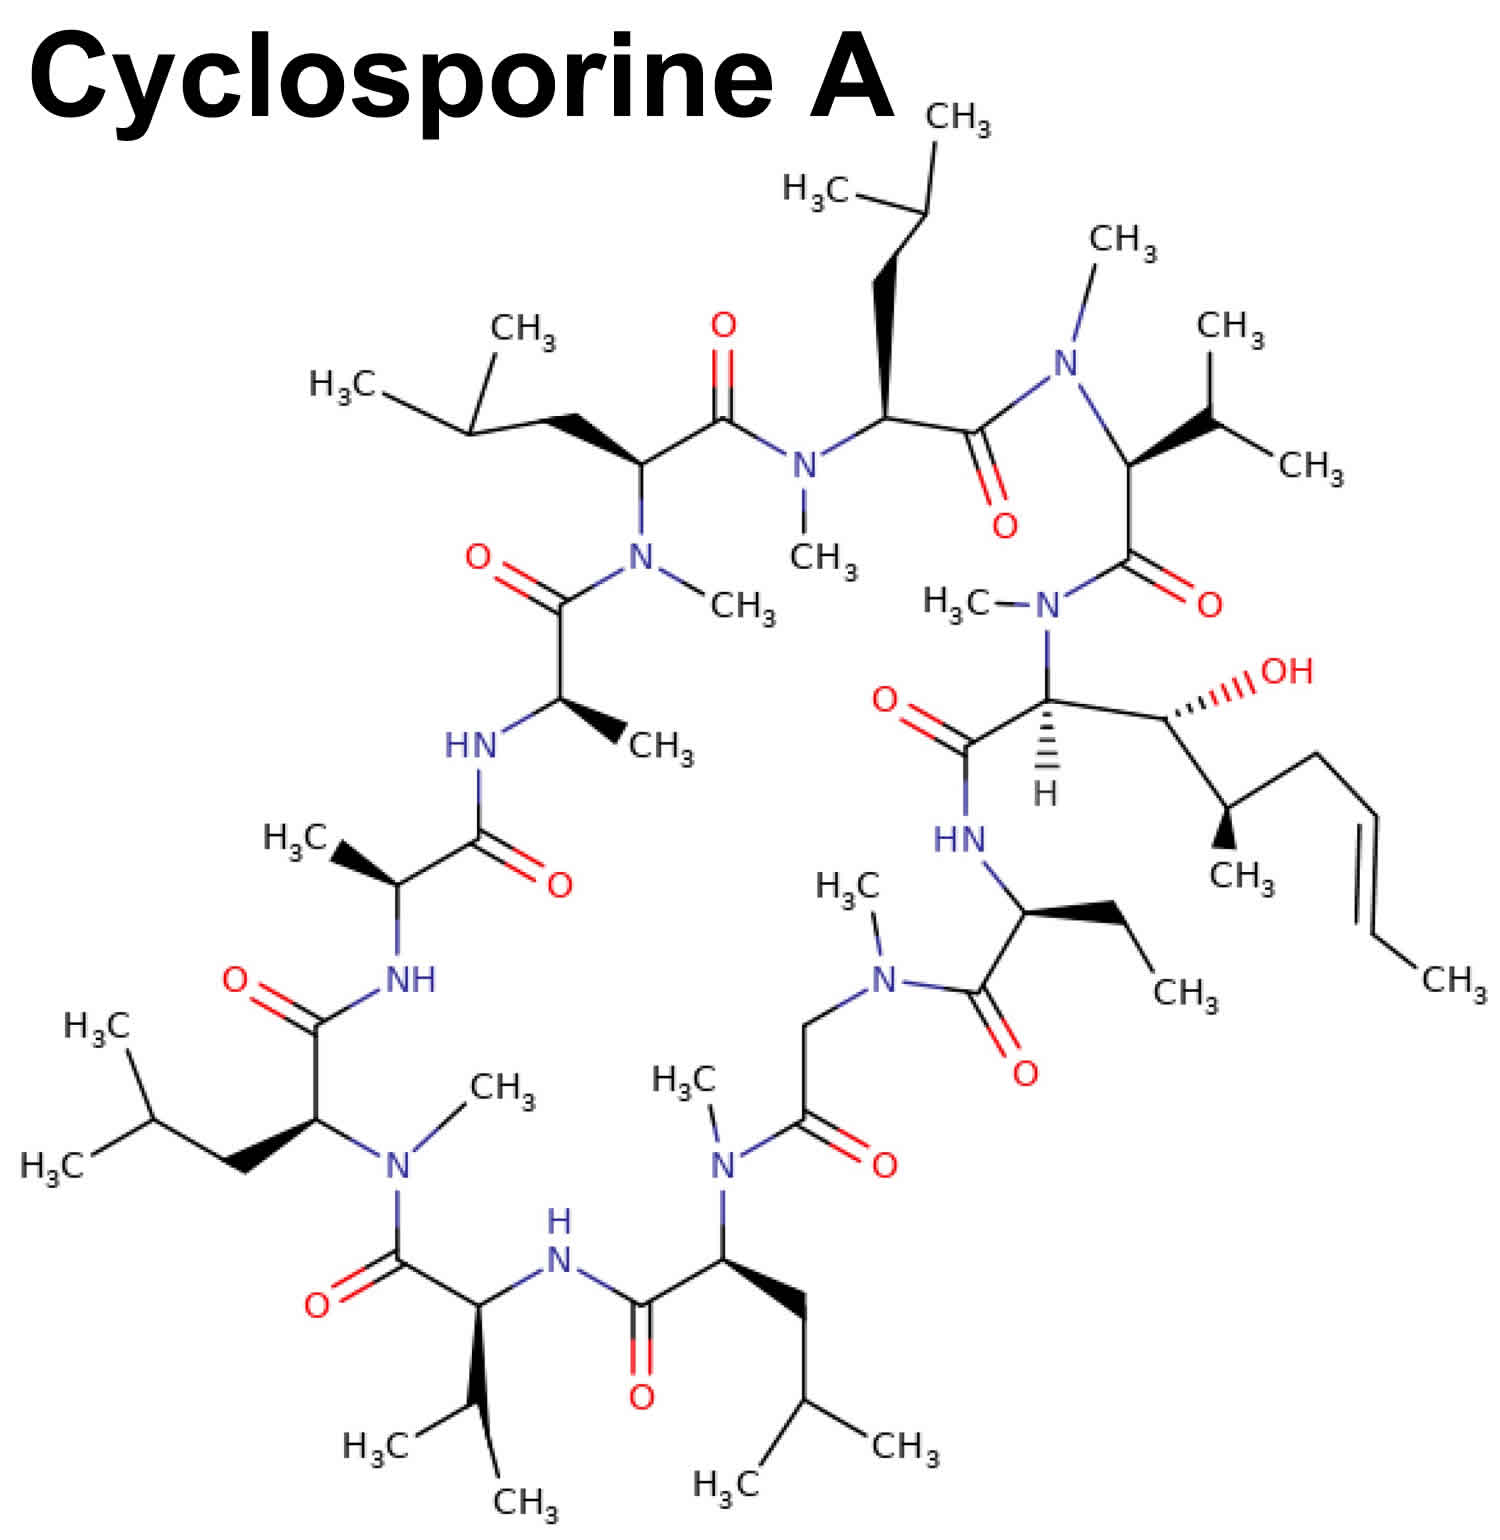 cyclosporine A